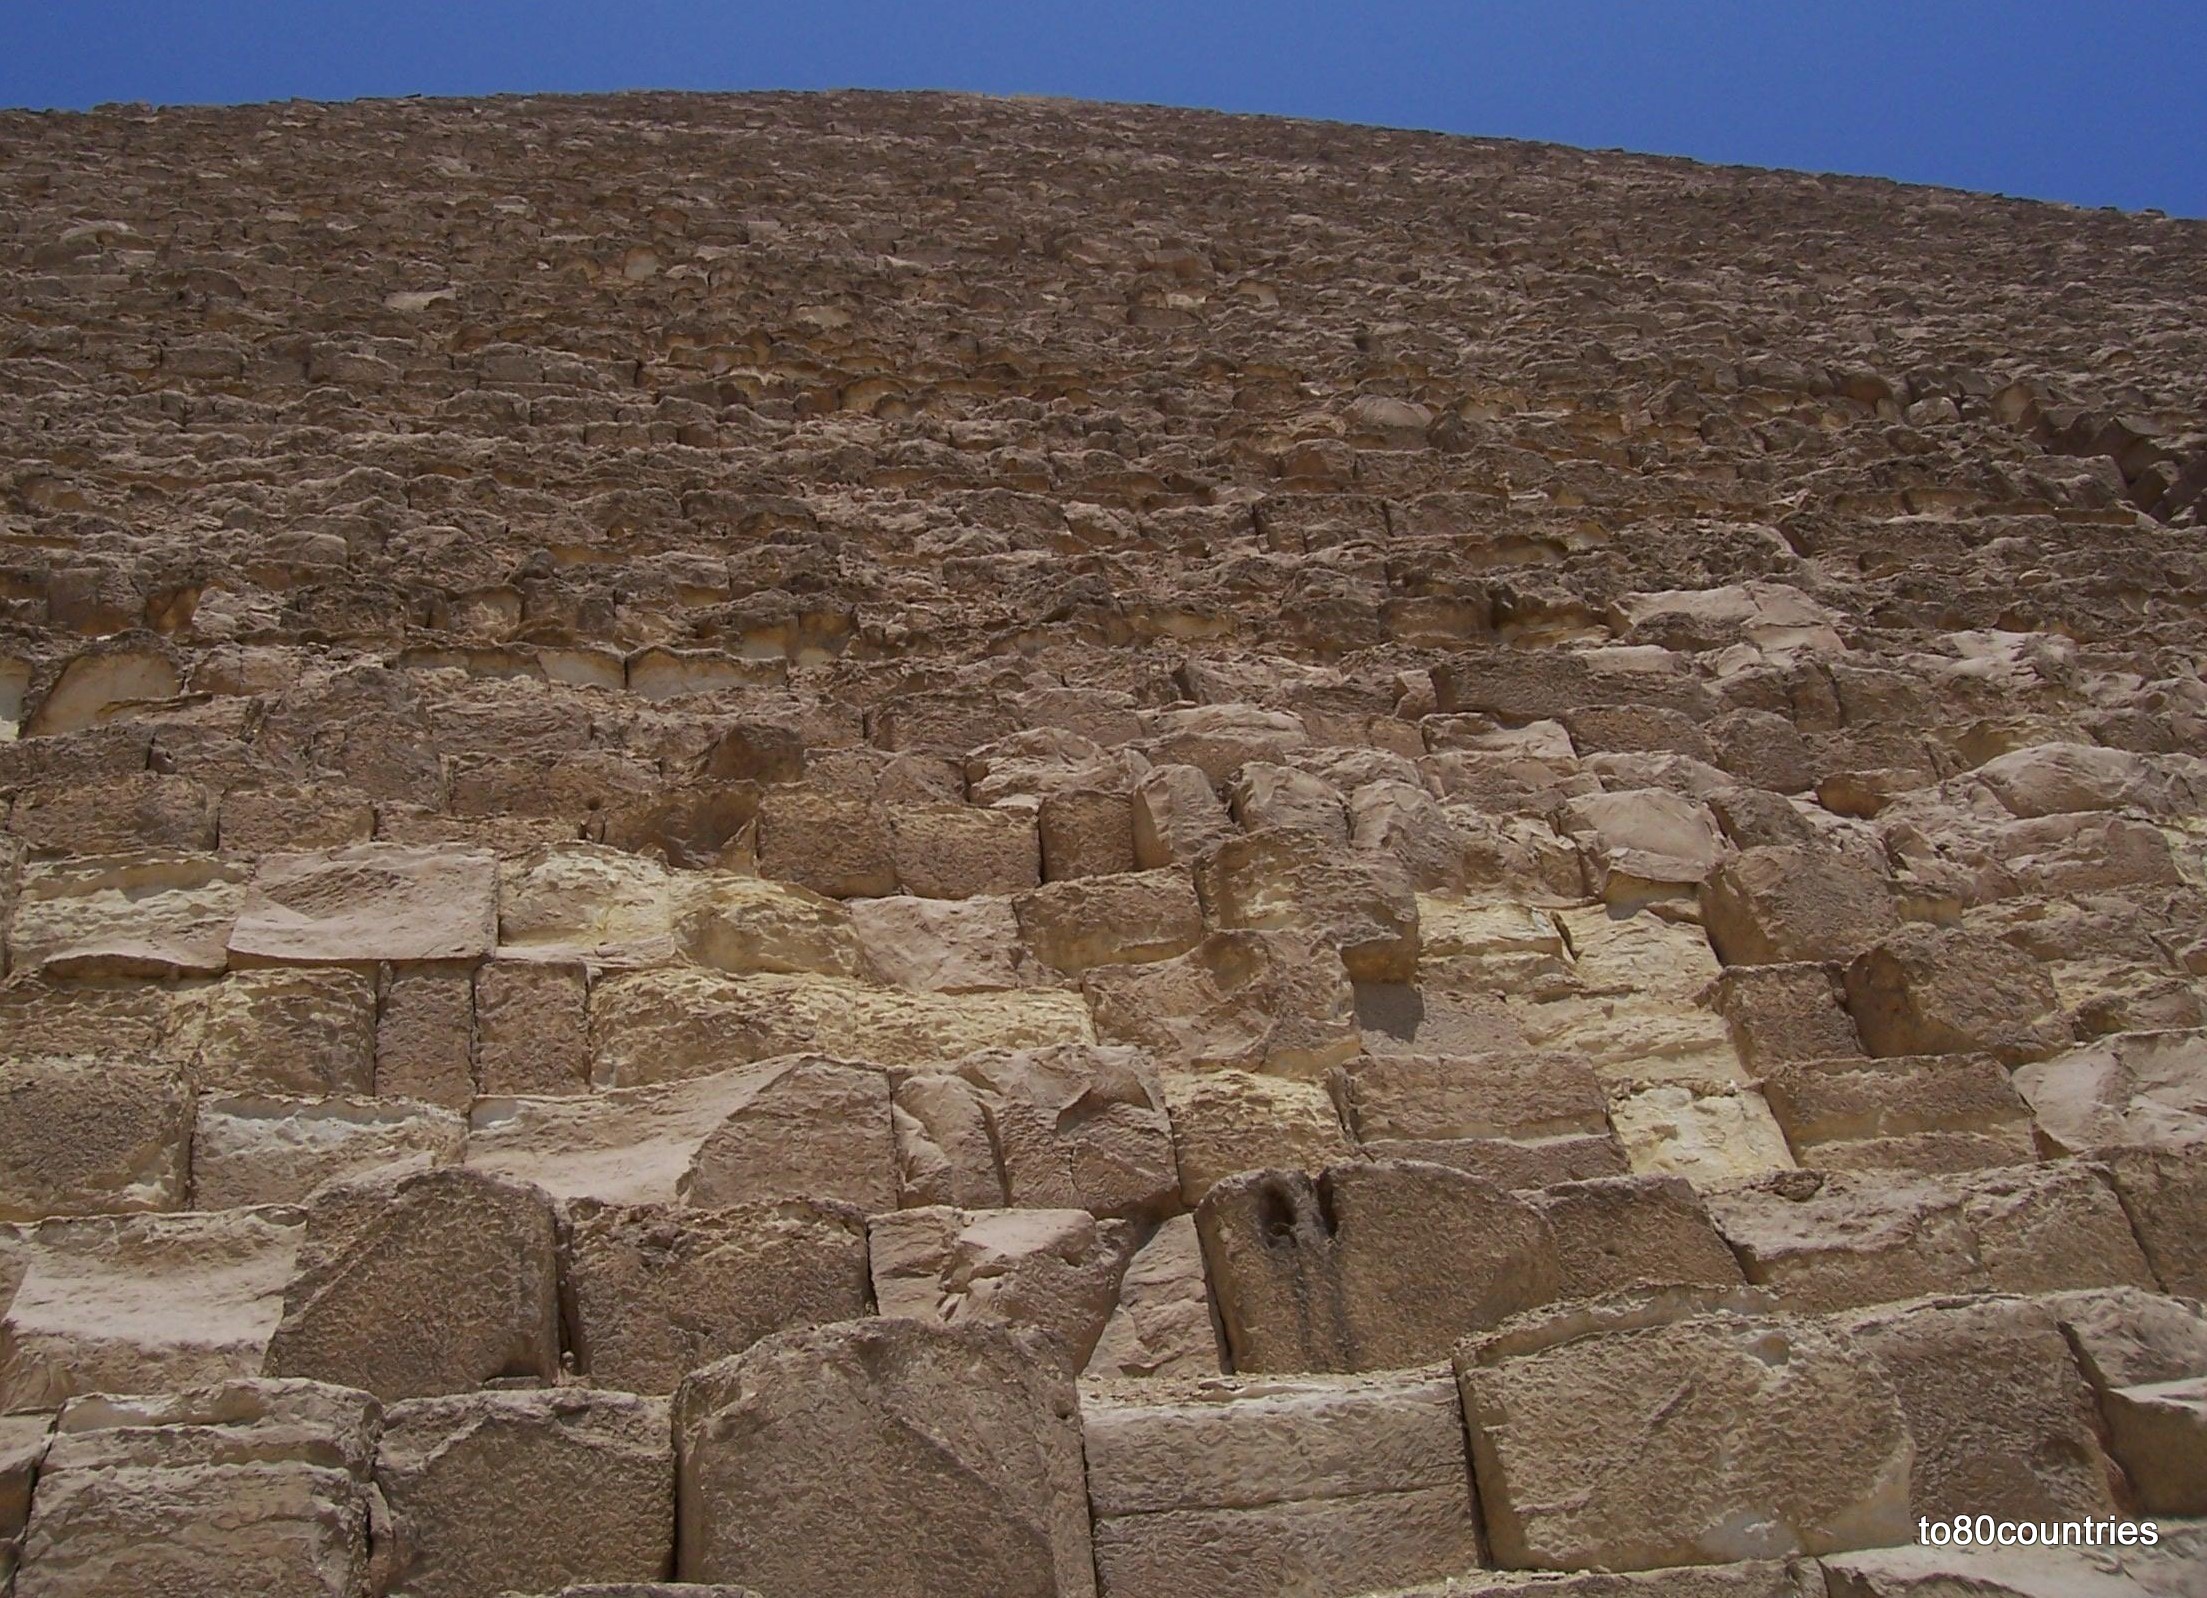 pyramide1